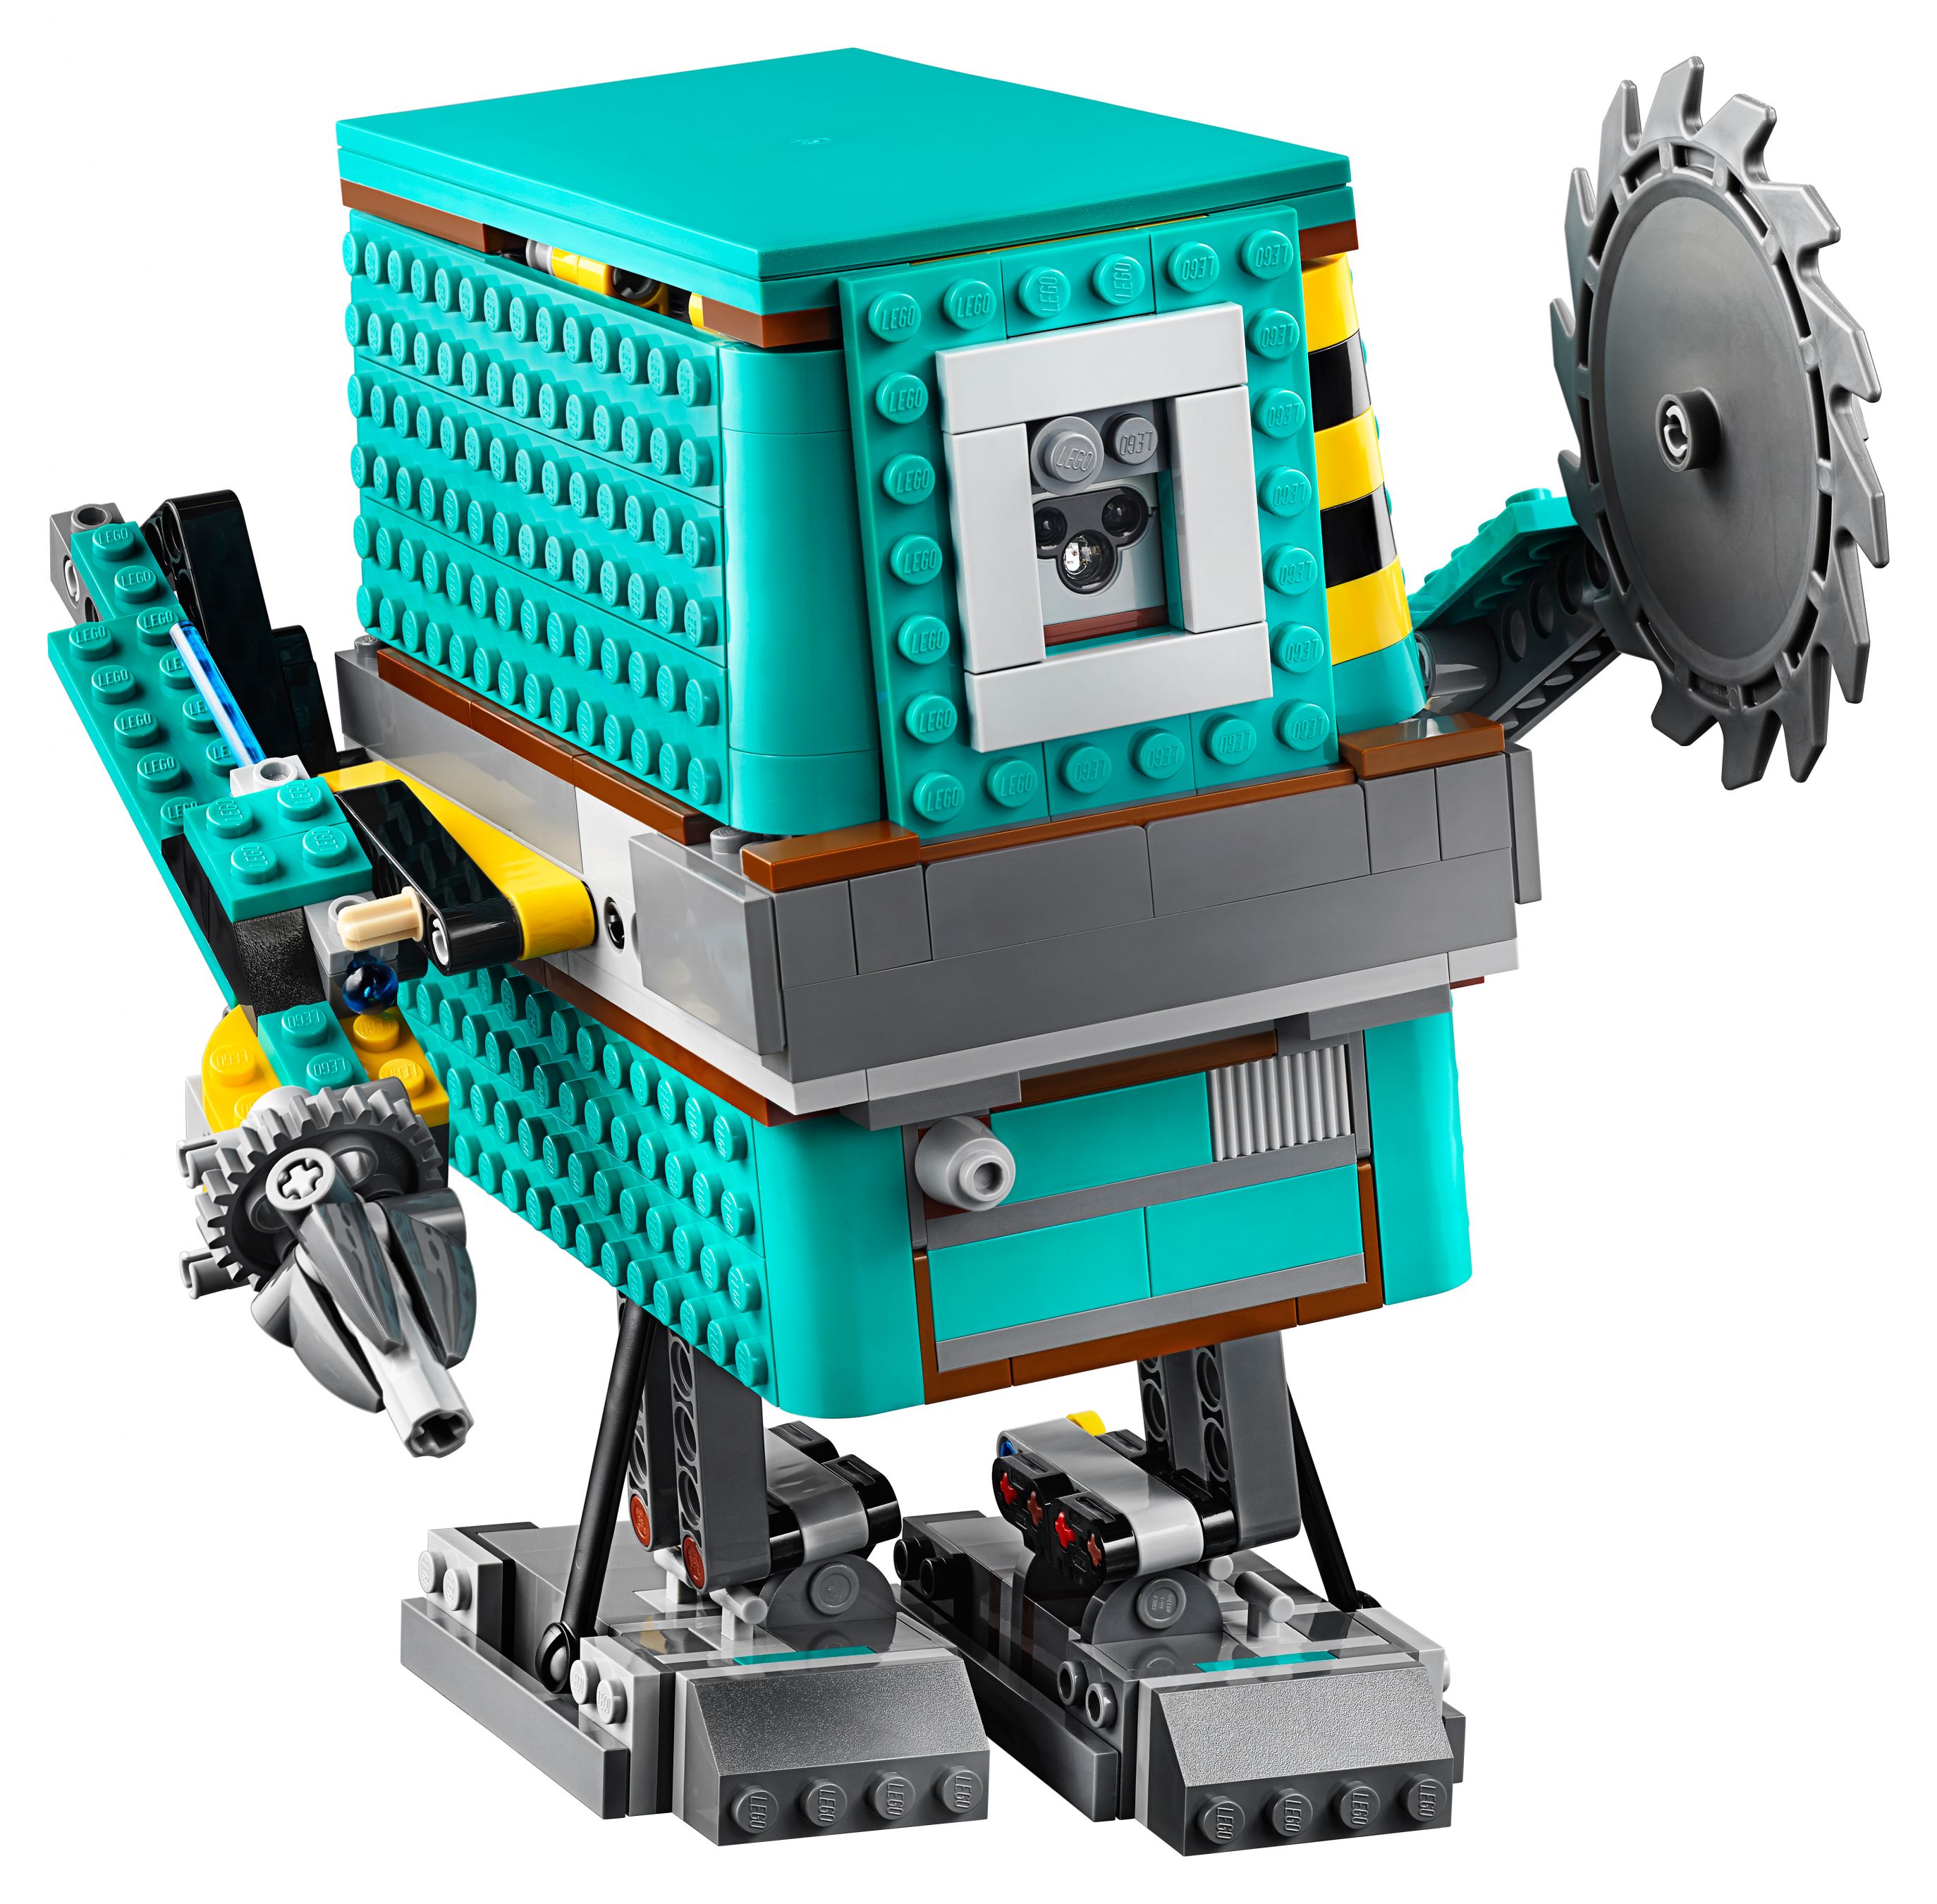 LEGO BOOST 75253 Star Wars™ BOOST Droide LEGO_75253_alt4.jpg